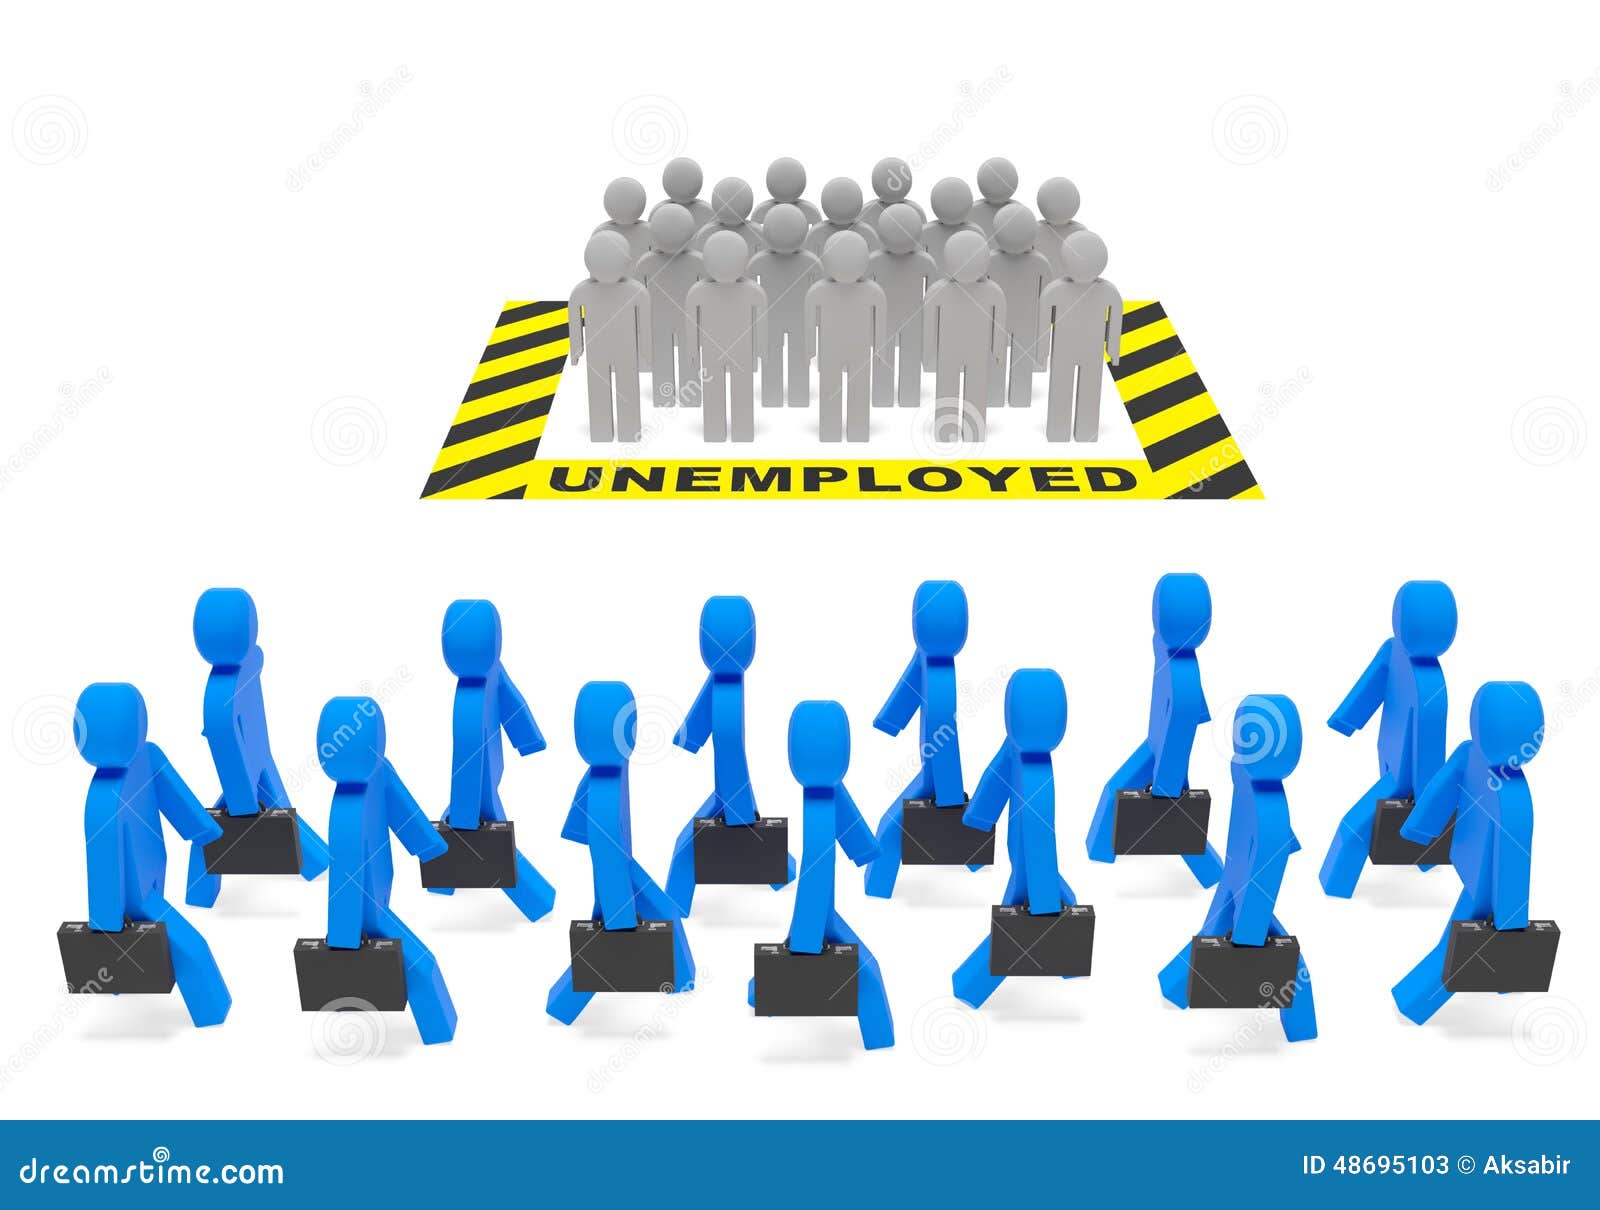 unemployment clipart images - photo #39